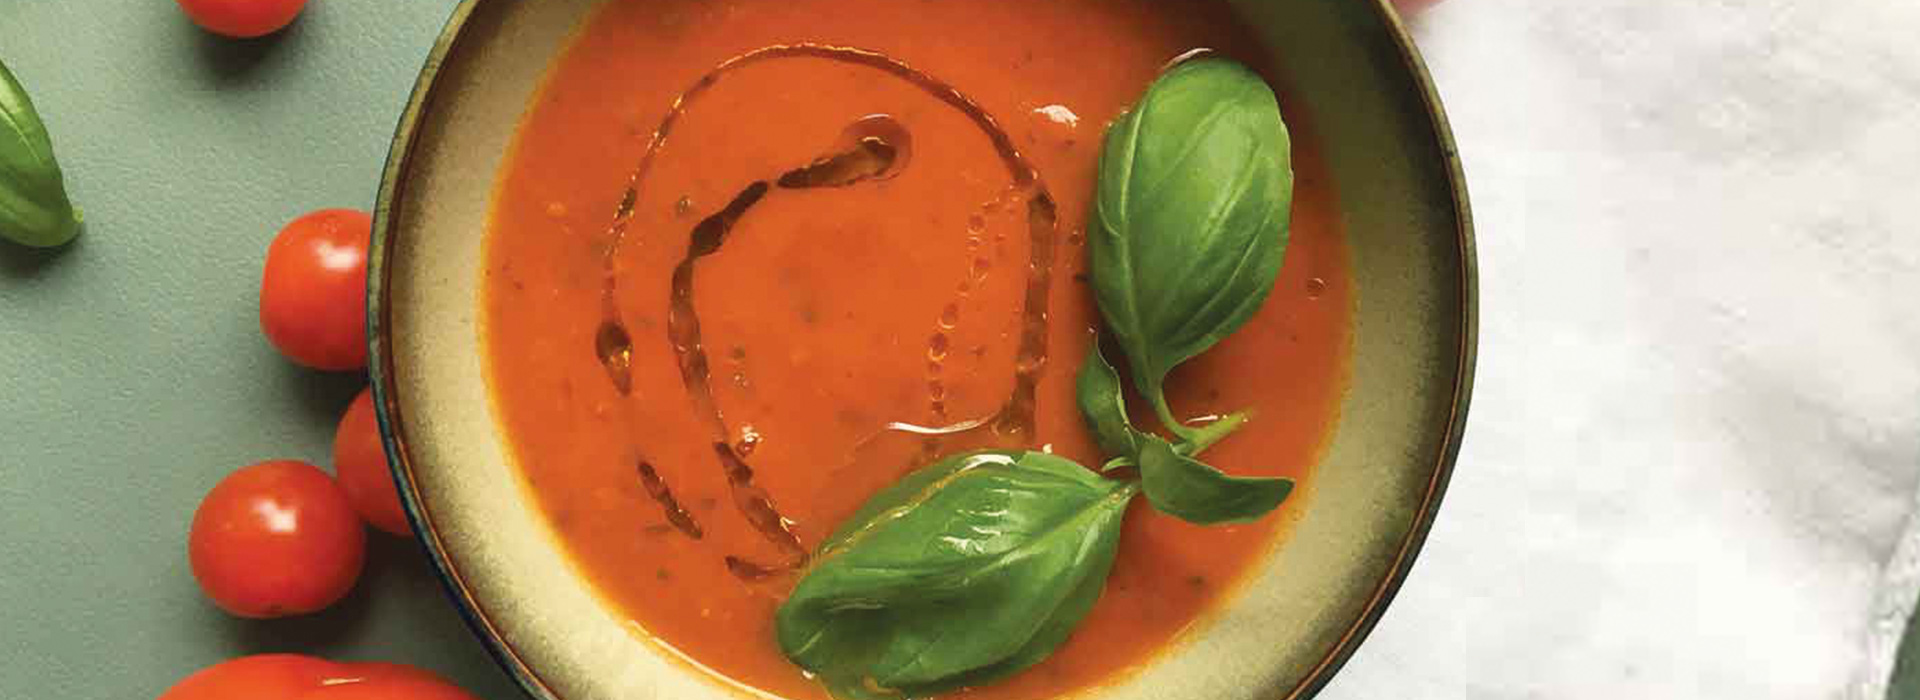 olivenlunden oppskrifter suppe tomatsuppe med chilolje hvit balsamico cherrytomater hverdagsolje